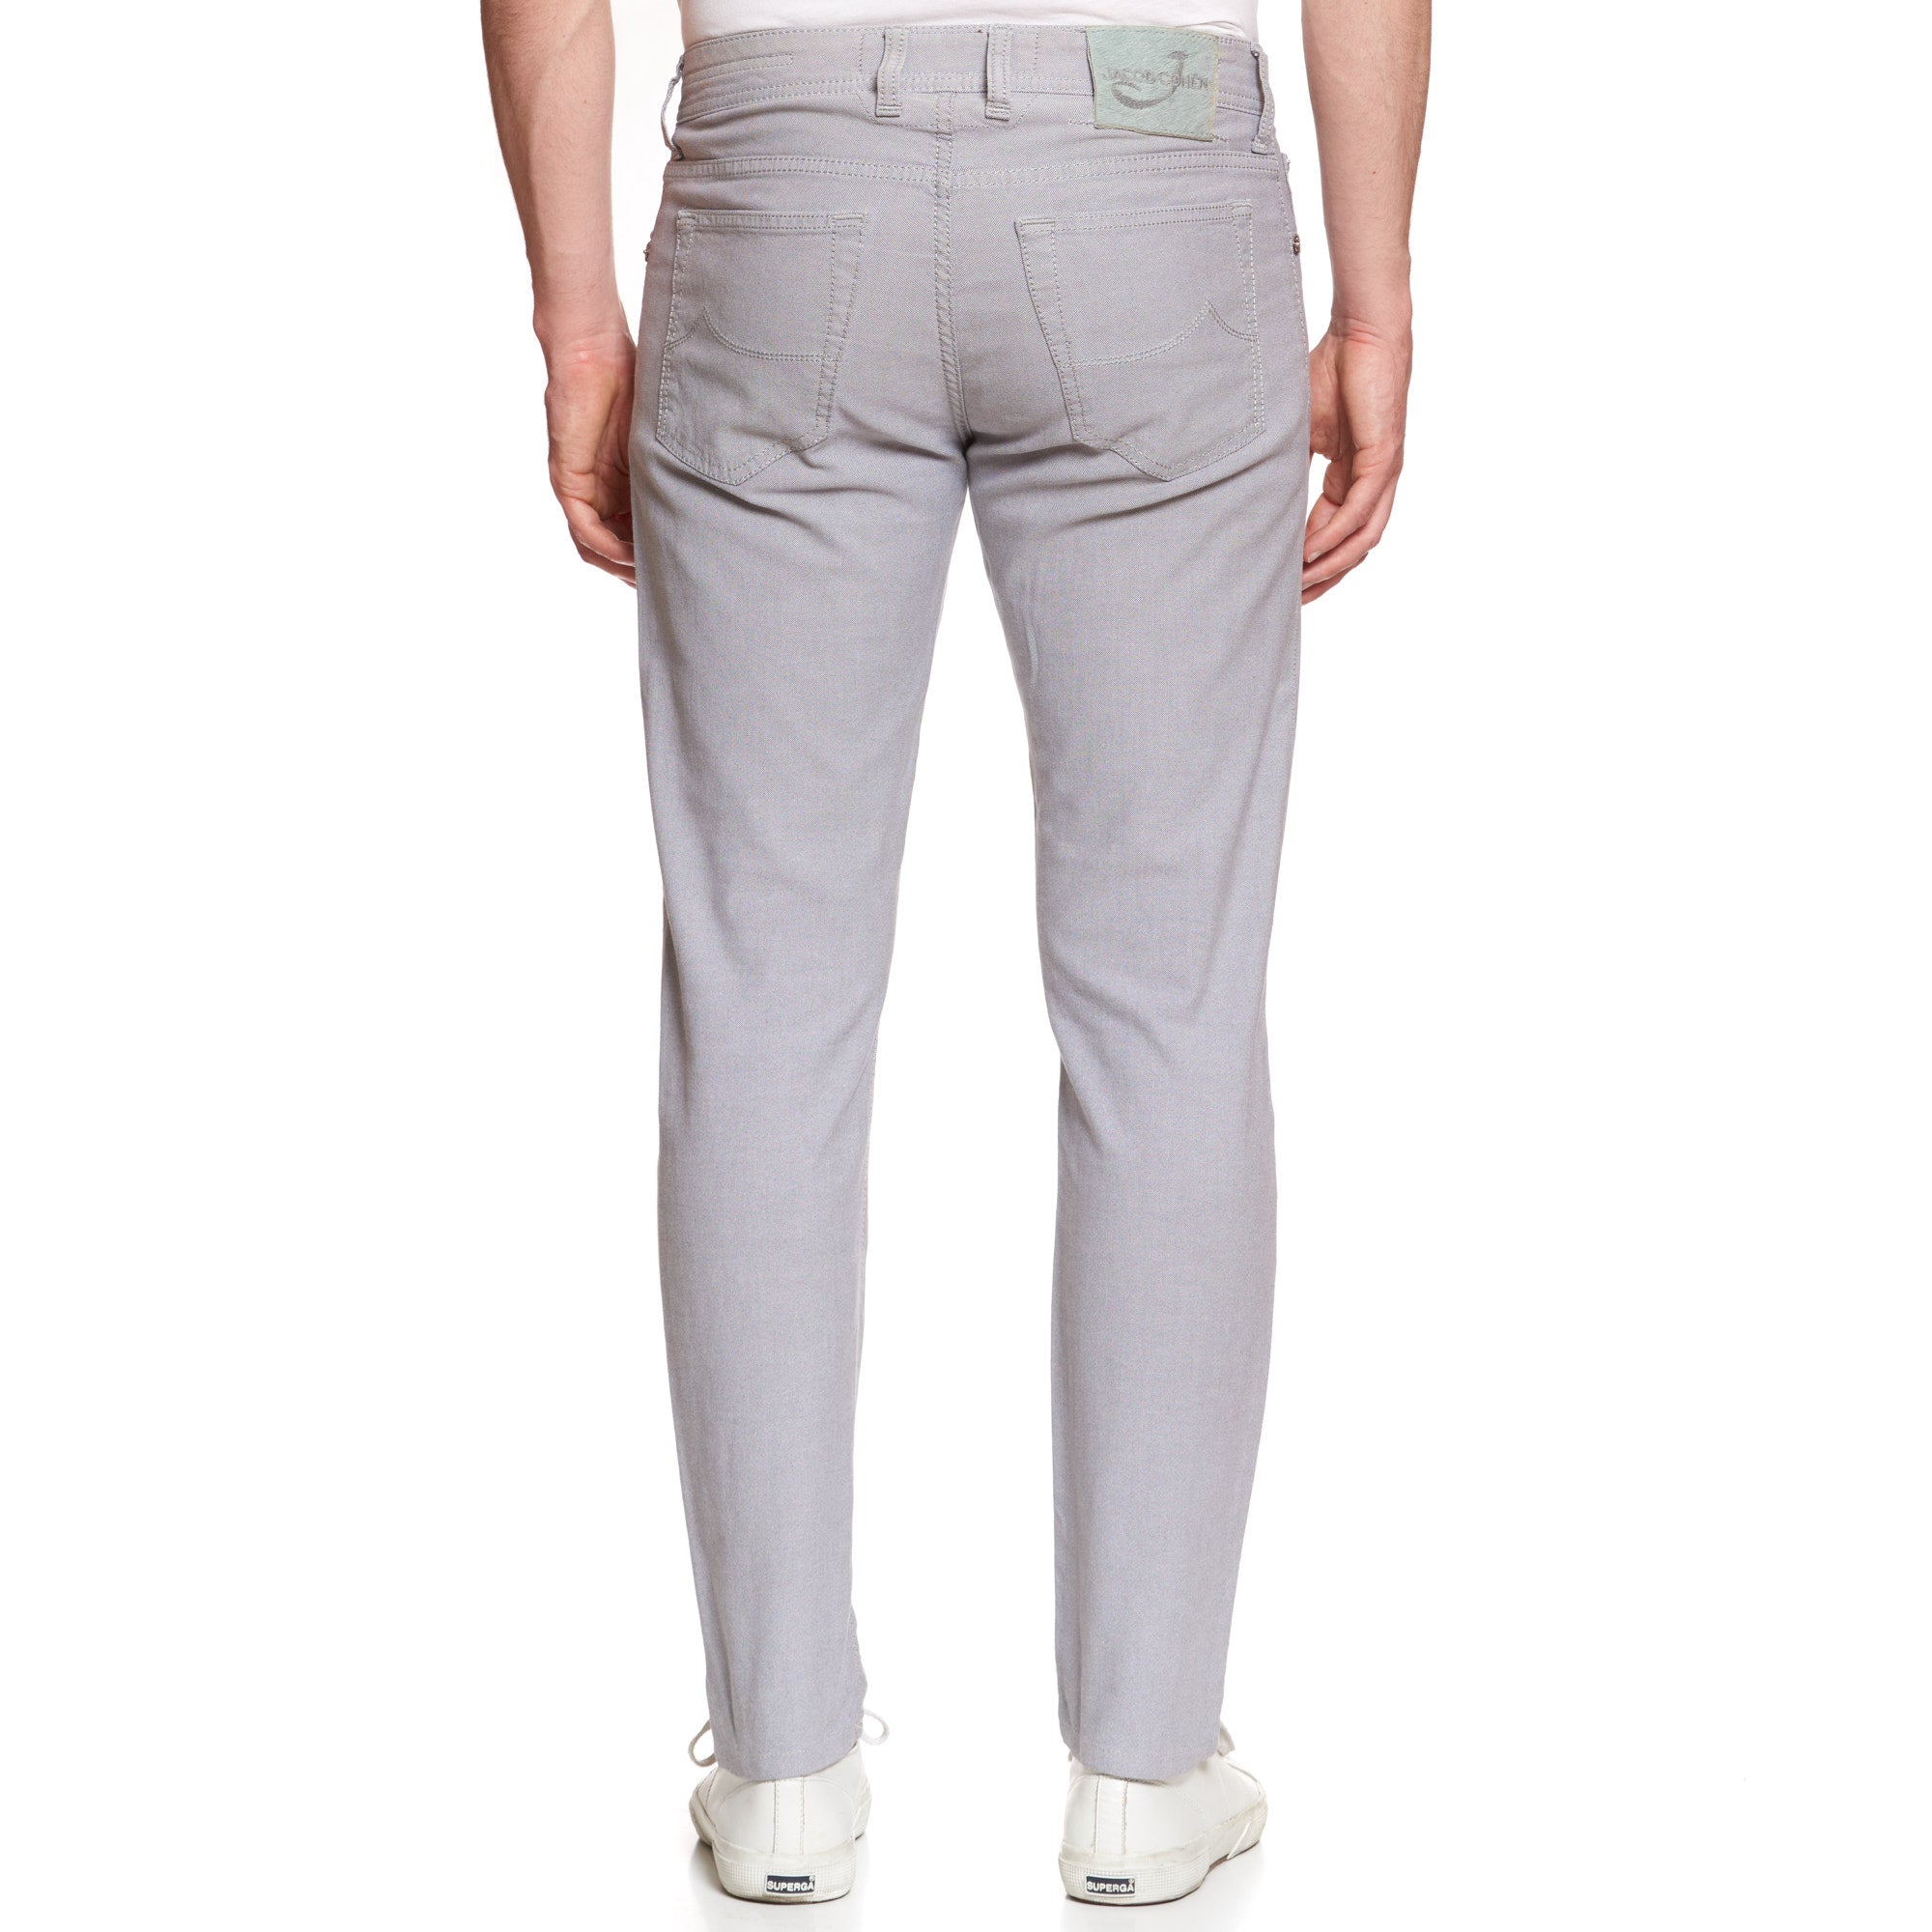 JACOB COHEN J688 Comfort Gray Cotton Stretch Slim Fit Jeans Pants US 33 JACOB COHEN